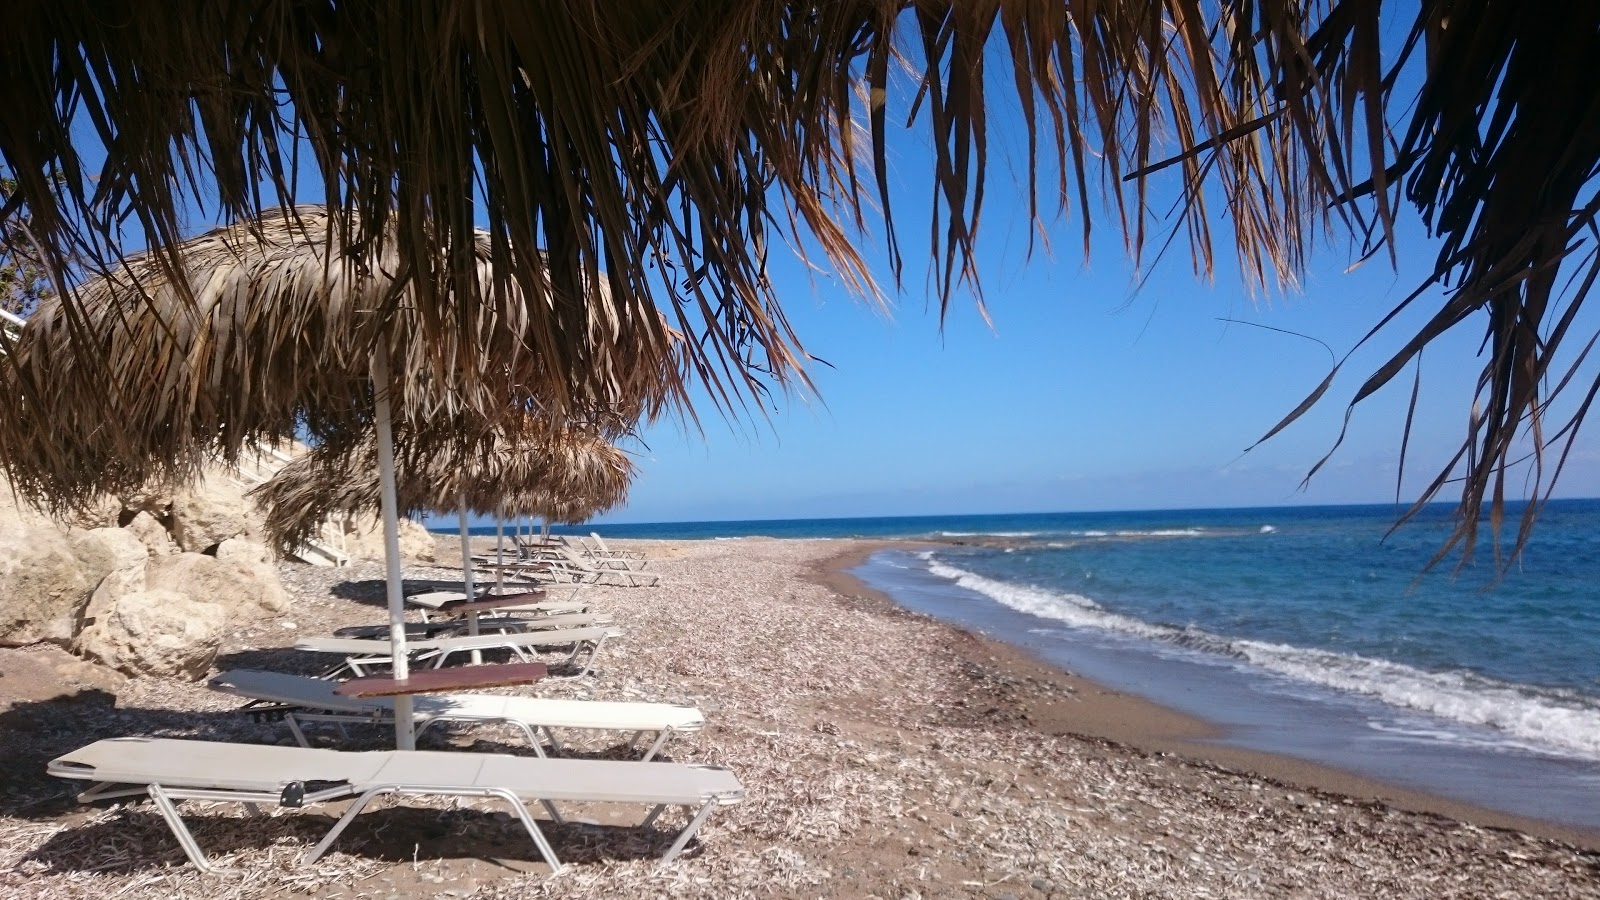 Fotografie cu Bonamare beach - locul popular printre cunoscătorii de relaxare